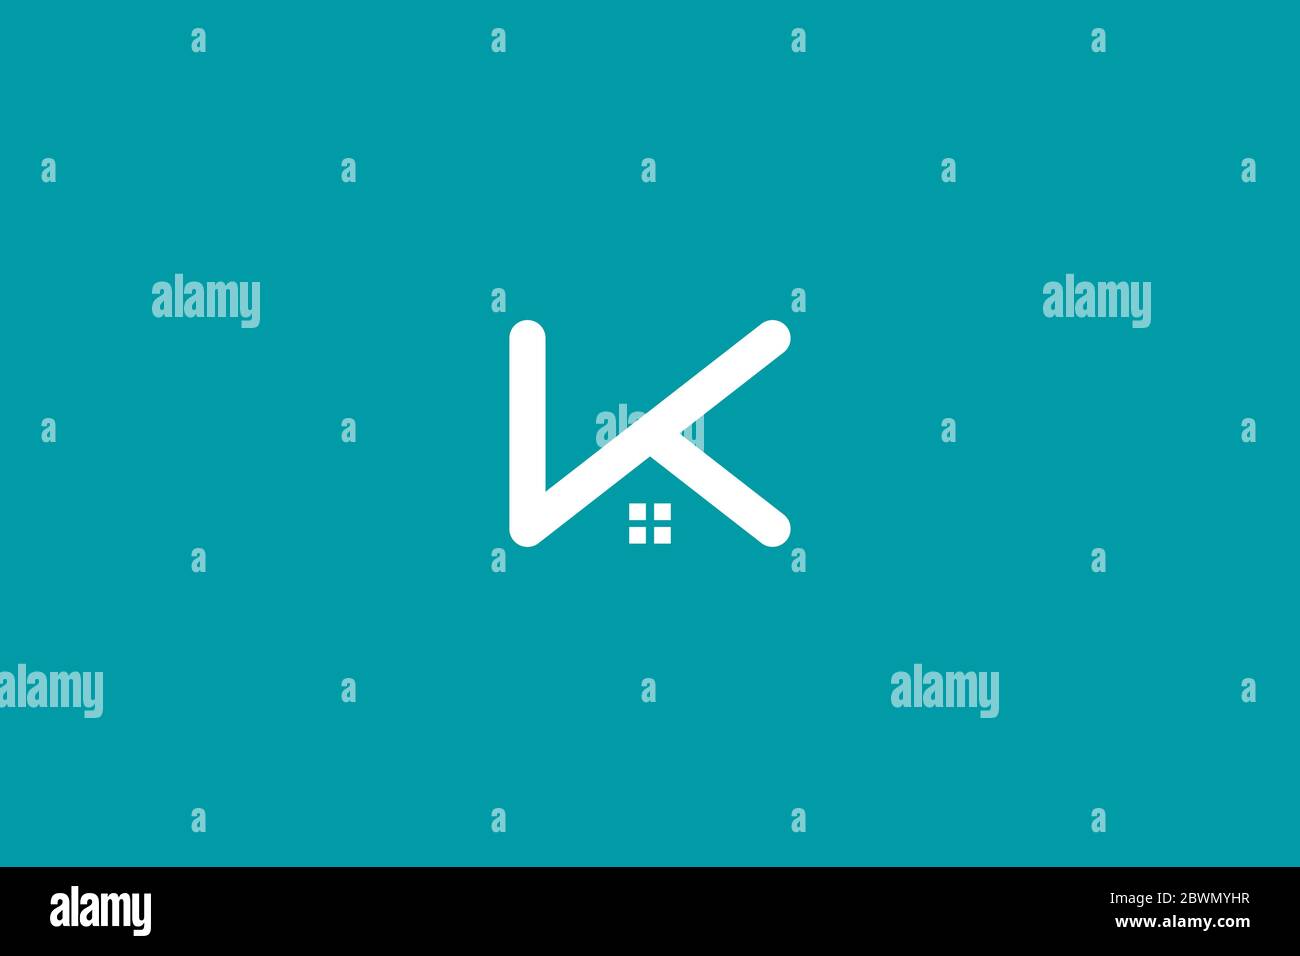 K logo accueil . logo immobilier avec lettre k initiales . illustration vectorielle eps10 Illustration de Vecteur